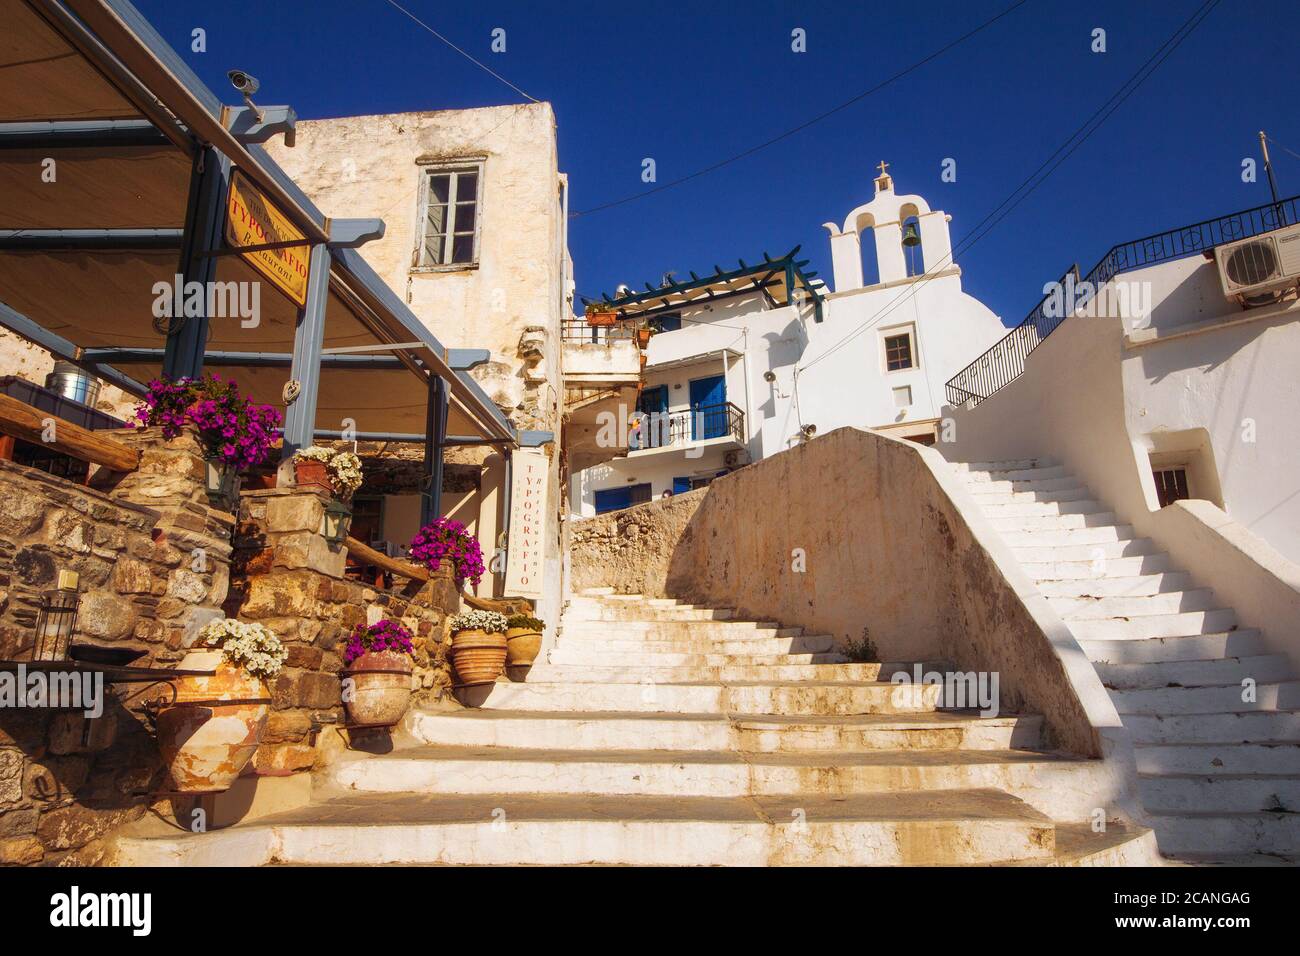 23.06. 2016 - Architecture traditionnelle dans la vieille ville de Naxos, Grèce Banque D'Images